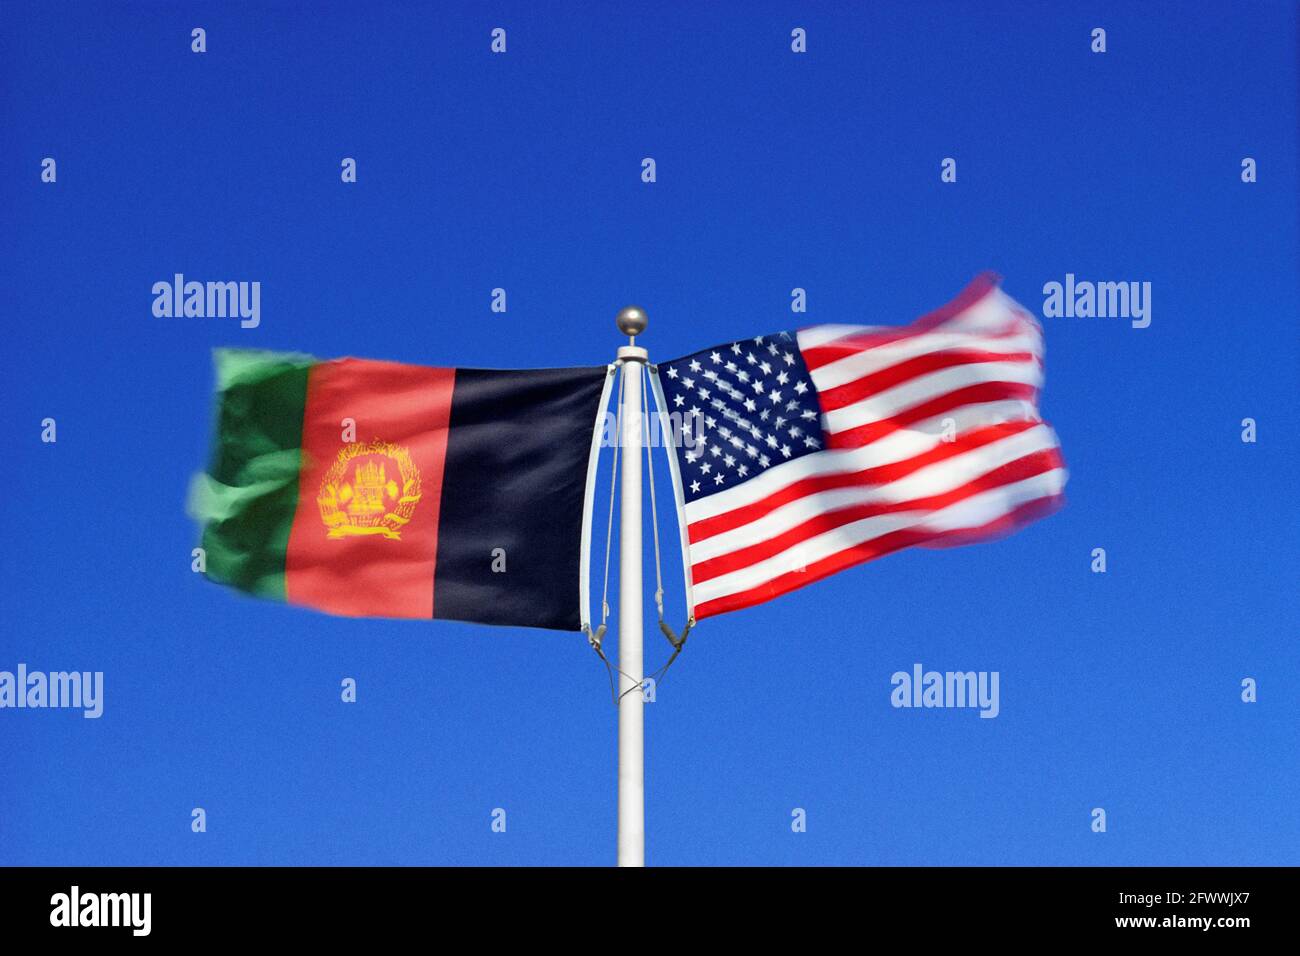 Die afghanischen und amerikanischen Flaggen schwingen in gegensätzlichen Winden an einem einzigen Fahnenmast Seite an Seite. Digitales Composite. Stockfoto